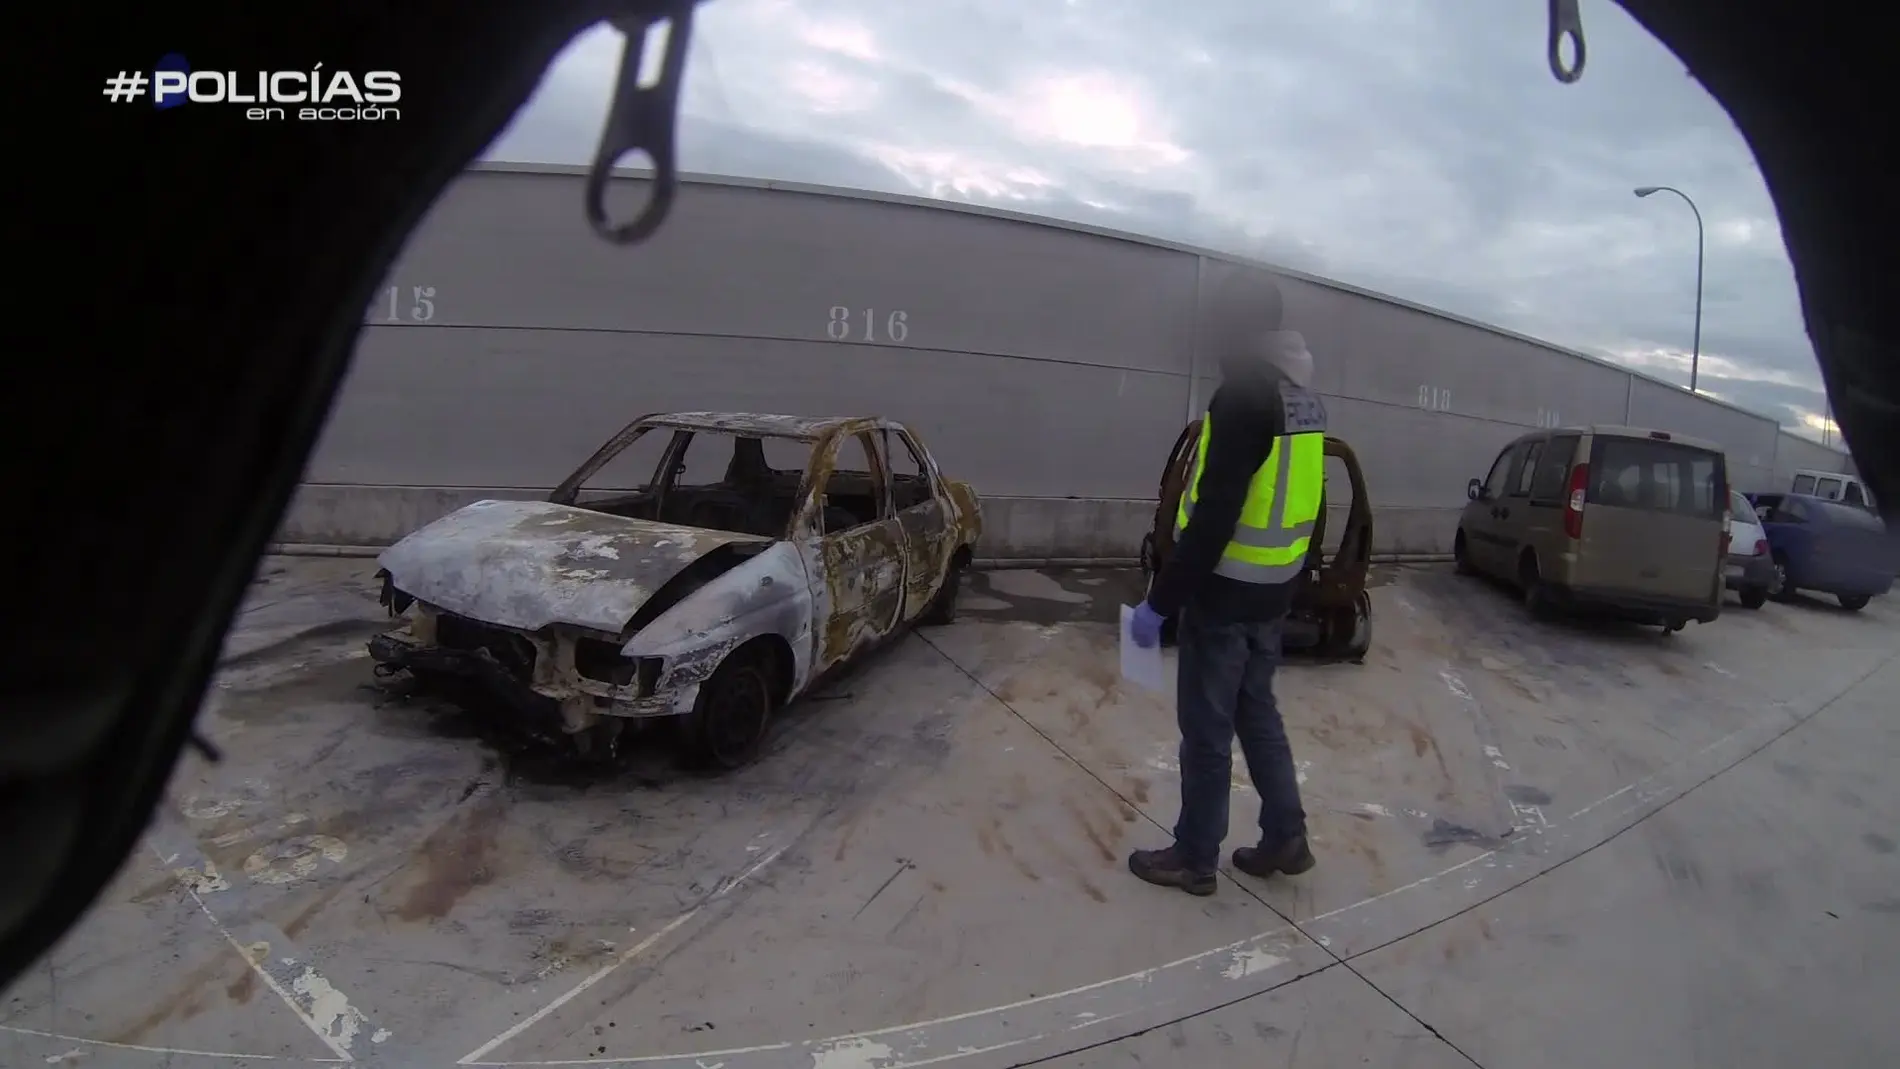 La Policía investiga un coche quemado para identificar las causas